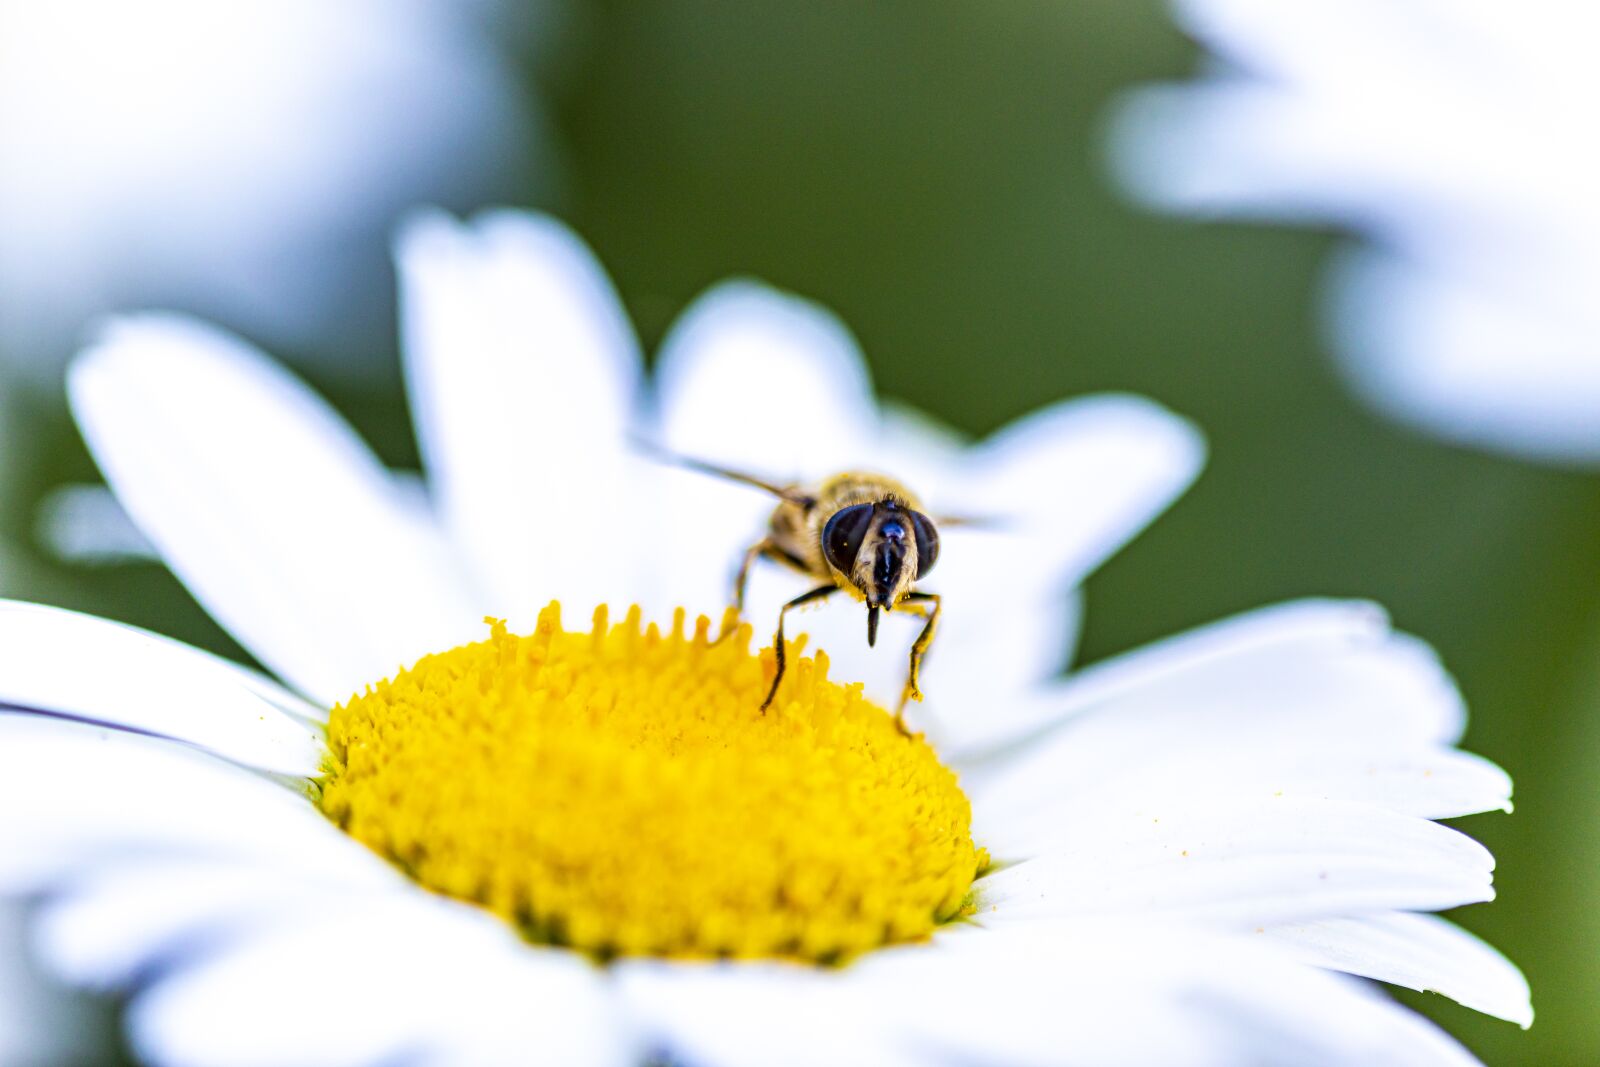 Canon EOS 5D Mark IV sample photo. Garden, flower, bee photography